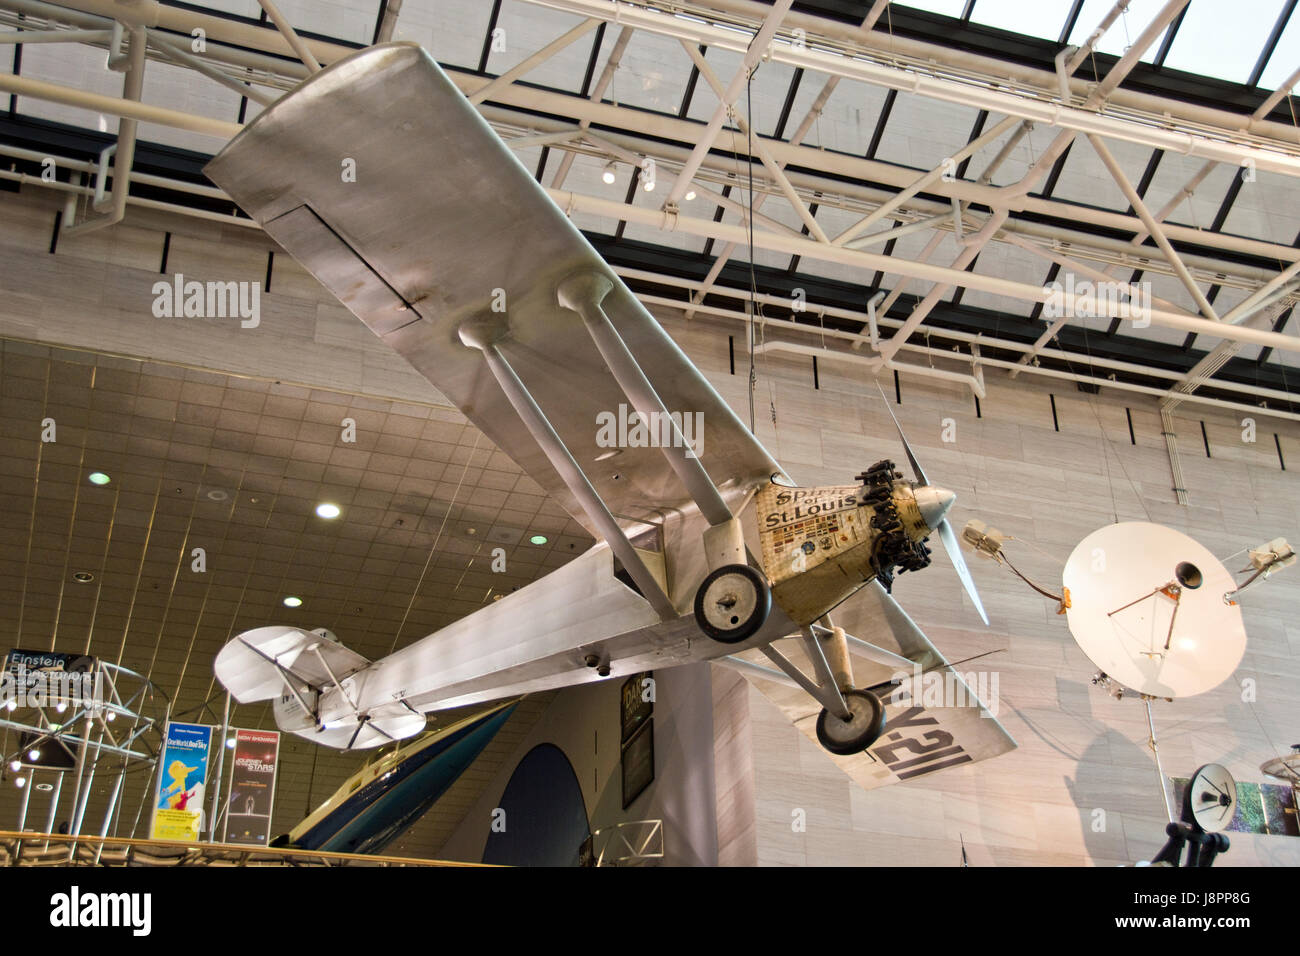 Lindberghs Spirit of St. Louis, das erste Flugzeug aus den USA nach Europa nonstop im Jahre 1927, der NAT Air & Space Museum, Washington, DC fliegen. Stockfoto